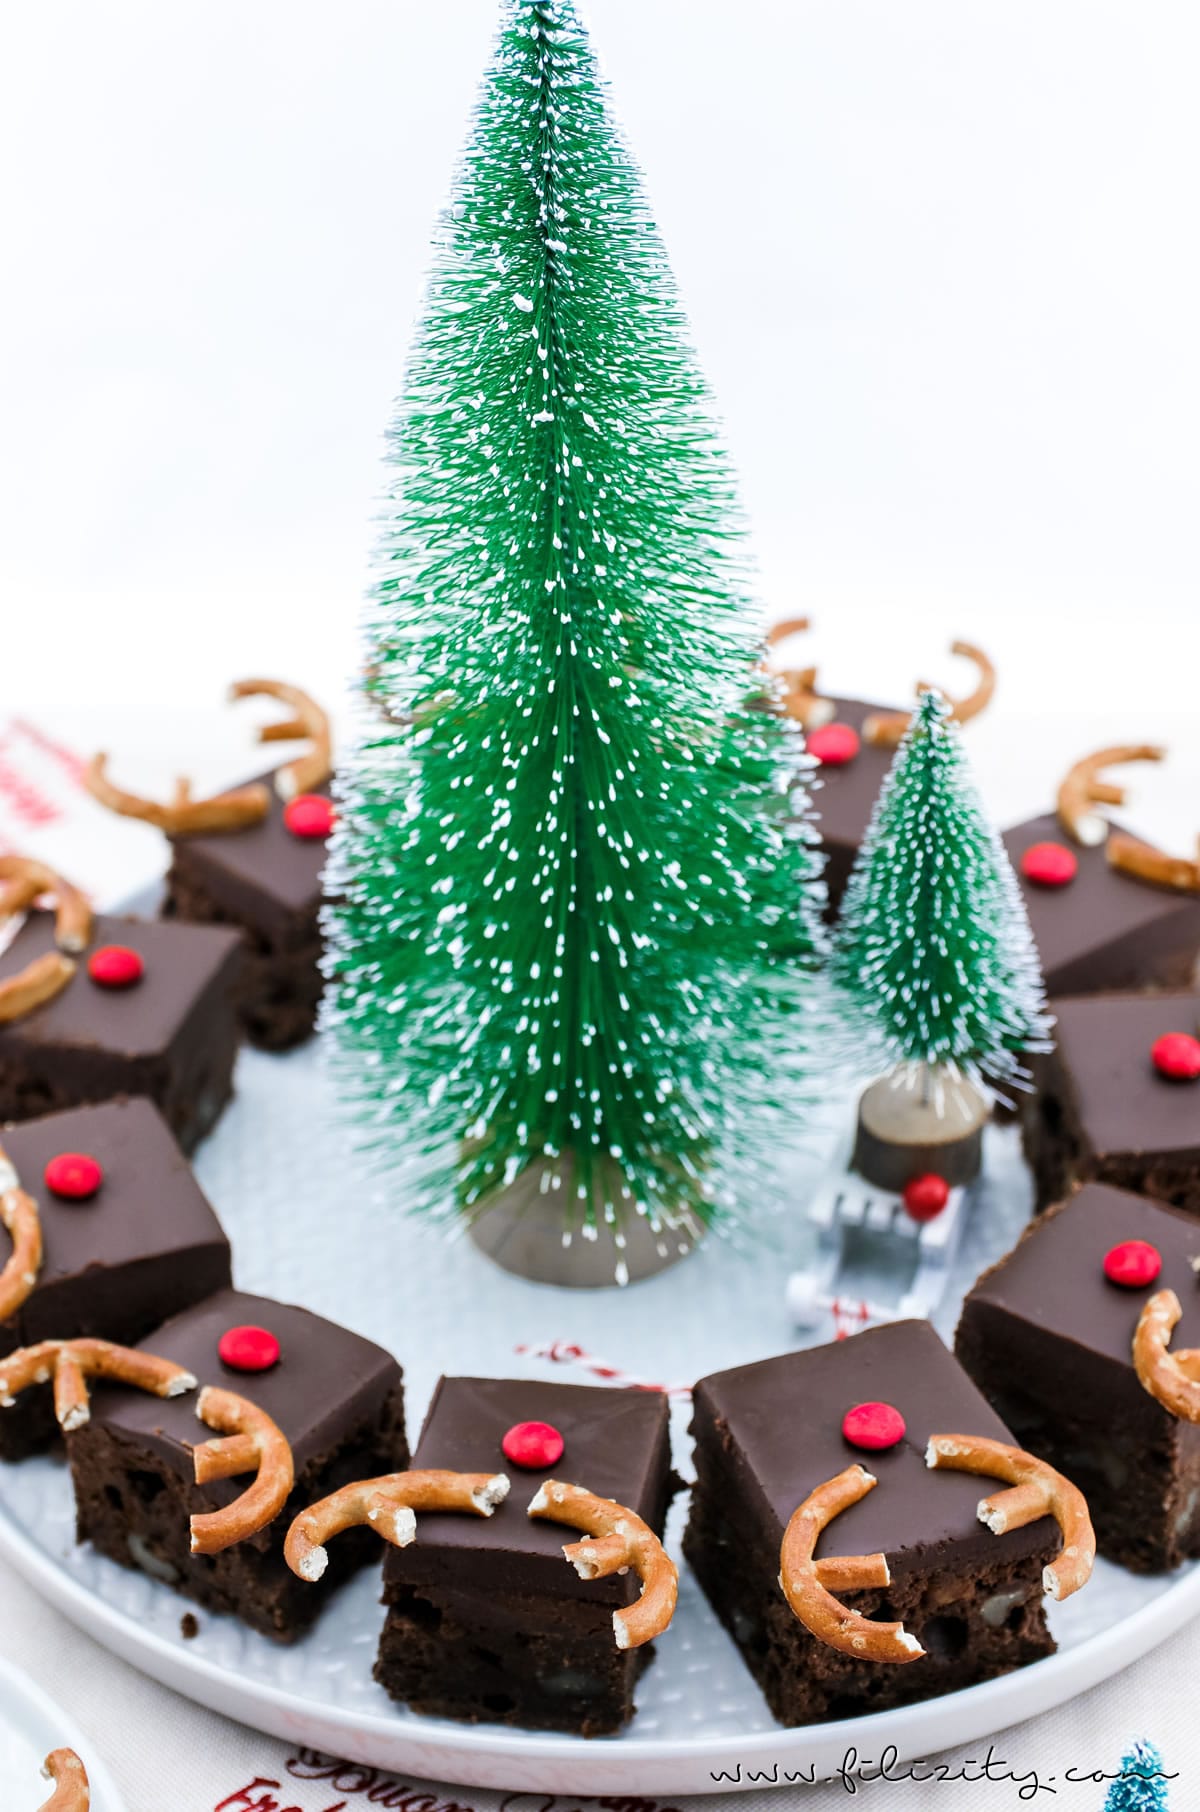 Rezept: Rudolph Brownies – Der schokoladigste Weihnachts-Kuchen (Death by Chocolate mit Smarties und Brezeln) | Filizity.com | Food-Blog aus dem Rheinland #deathbychocolatte #nomatterwhatthequestionischocolateistheanswer #weihnachten #rudolph